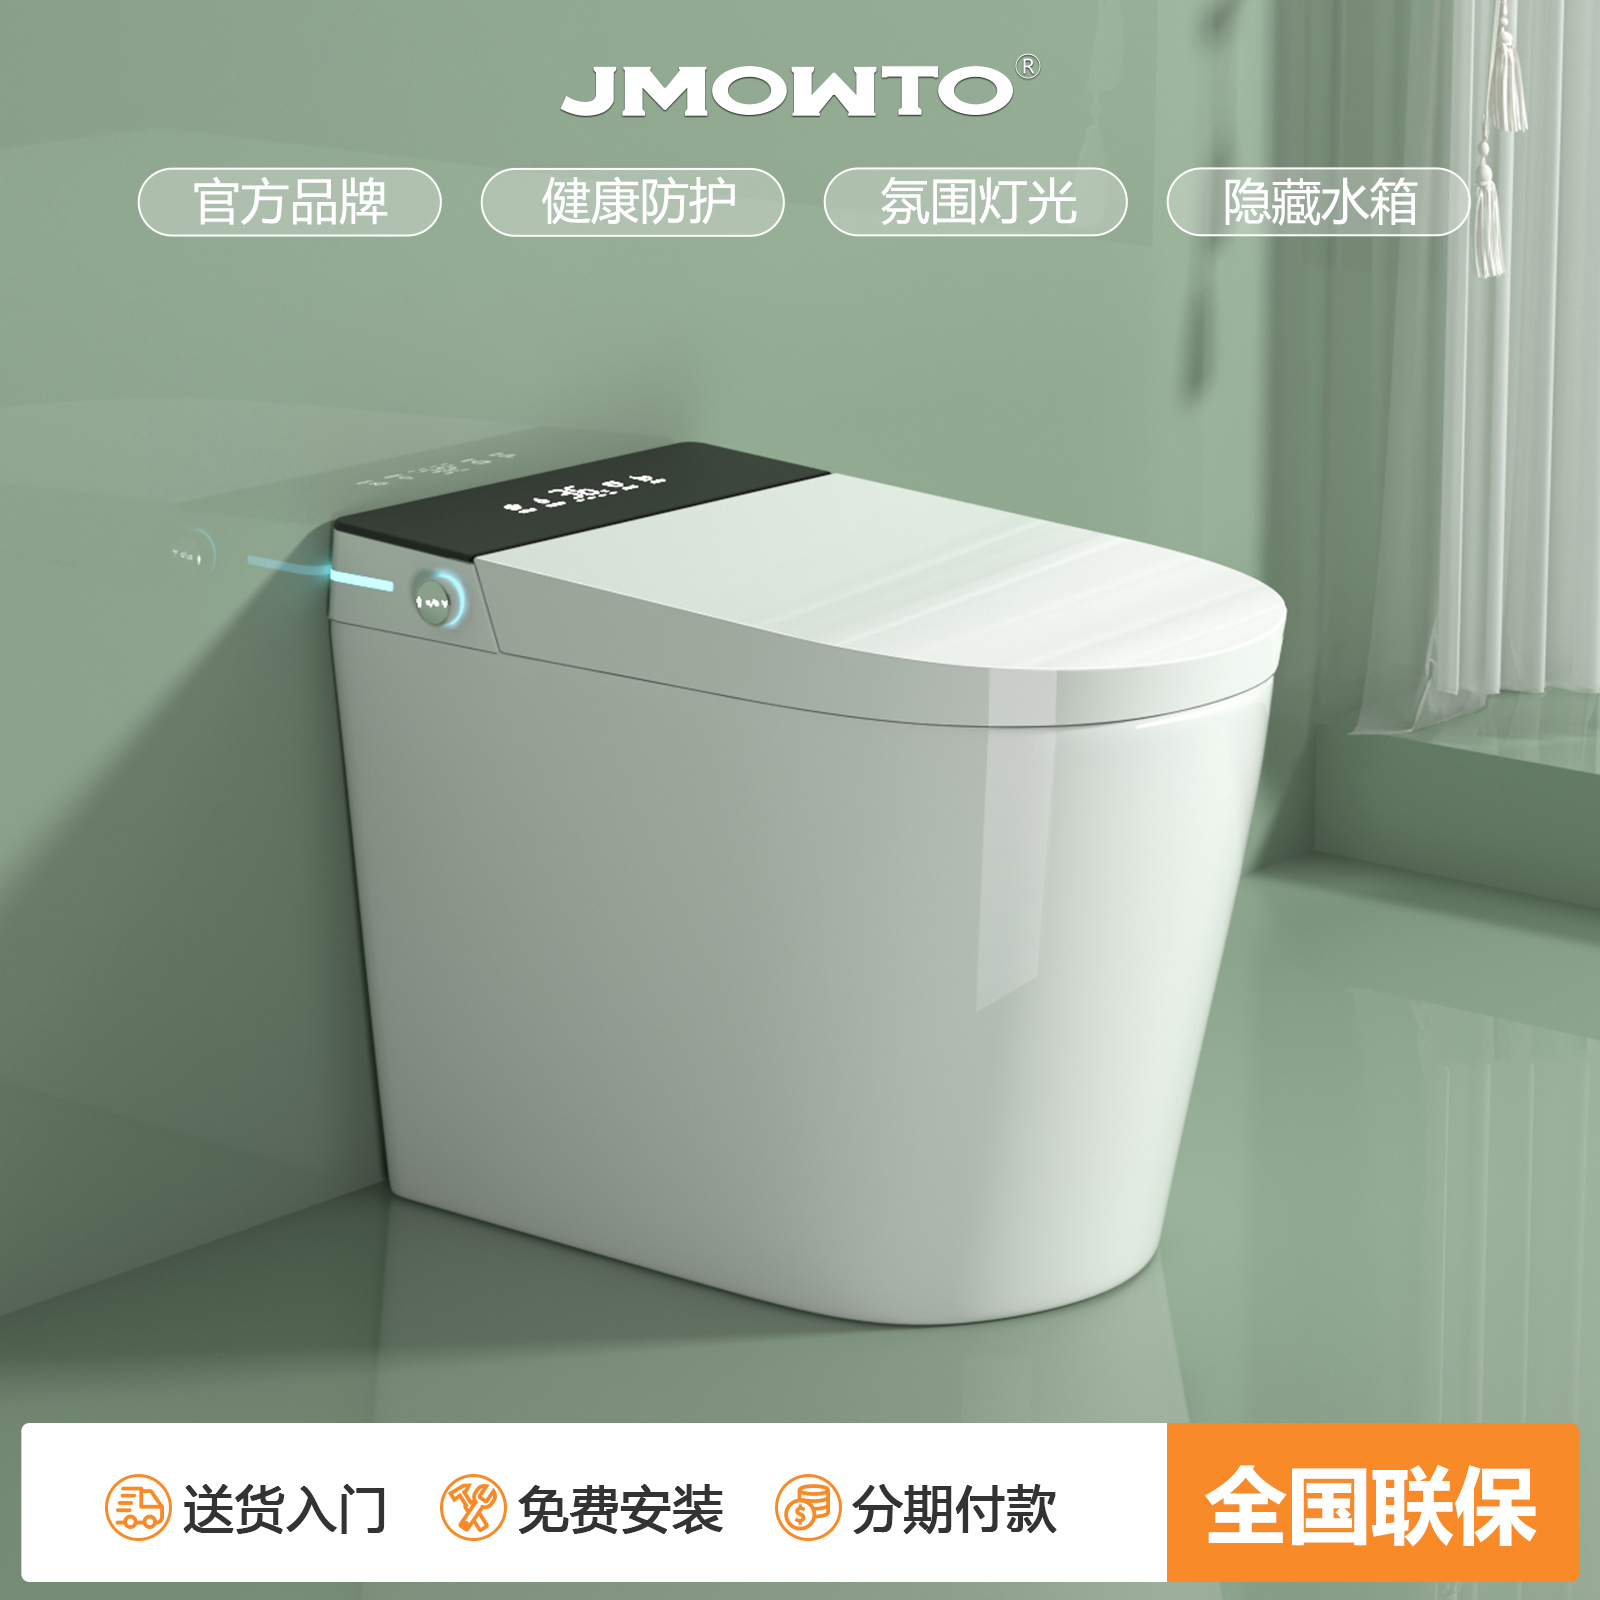 JMOWTO小户型轻智能马桶家用防臭杀菌无水压限制语音多功能座便器